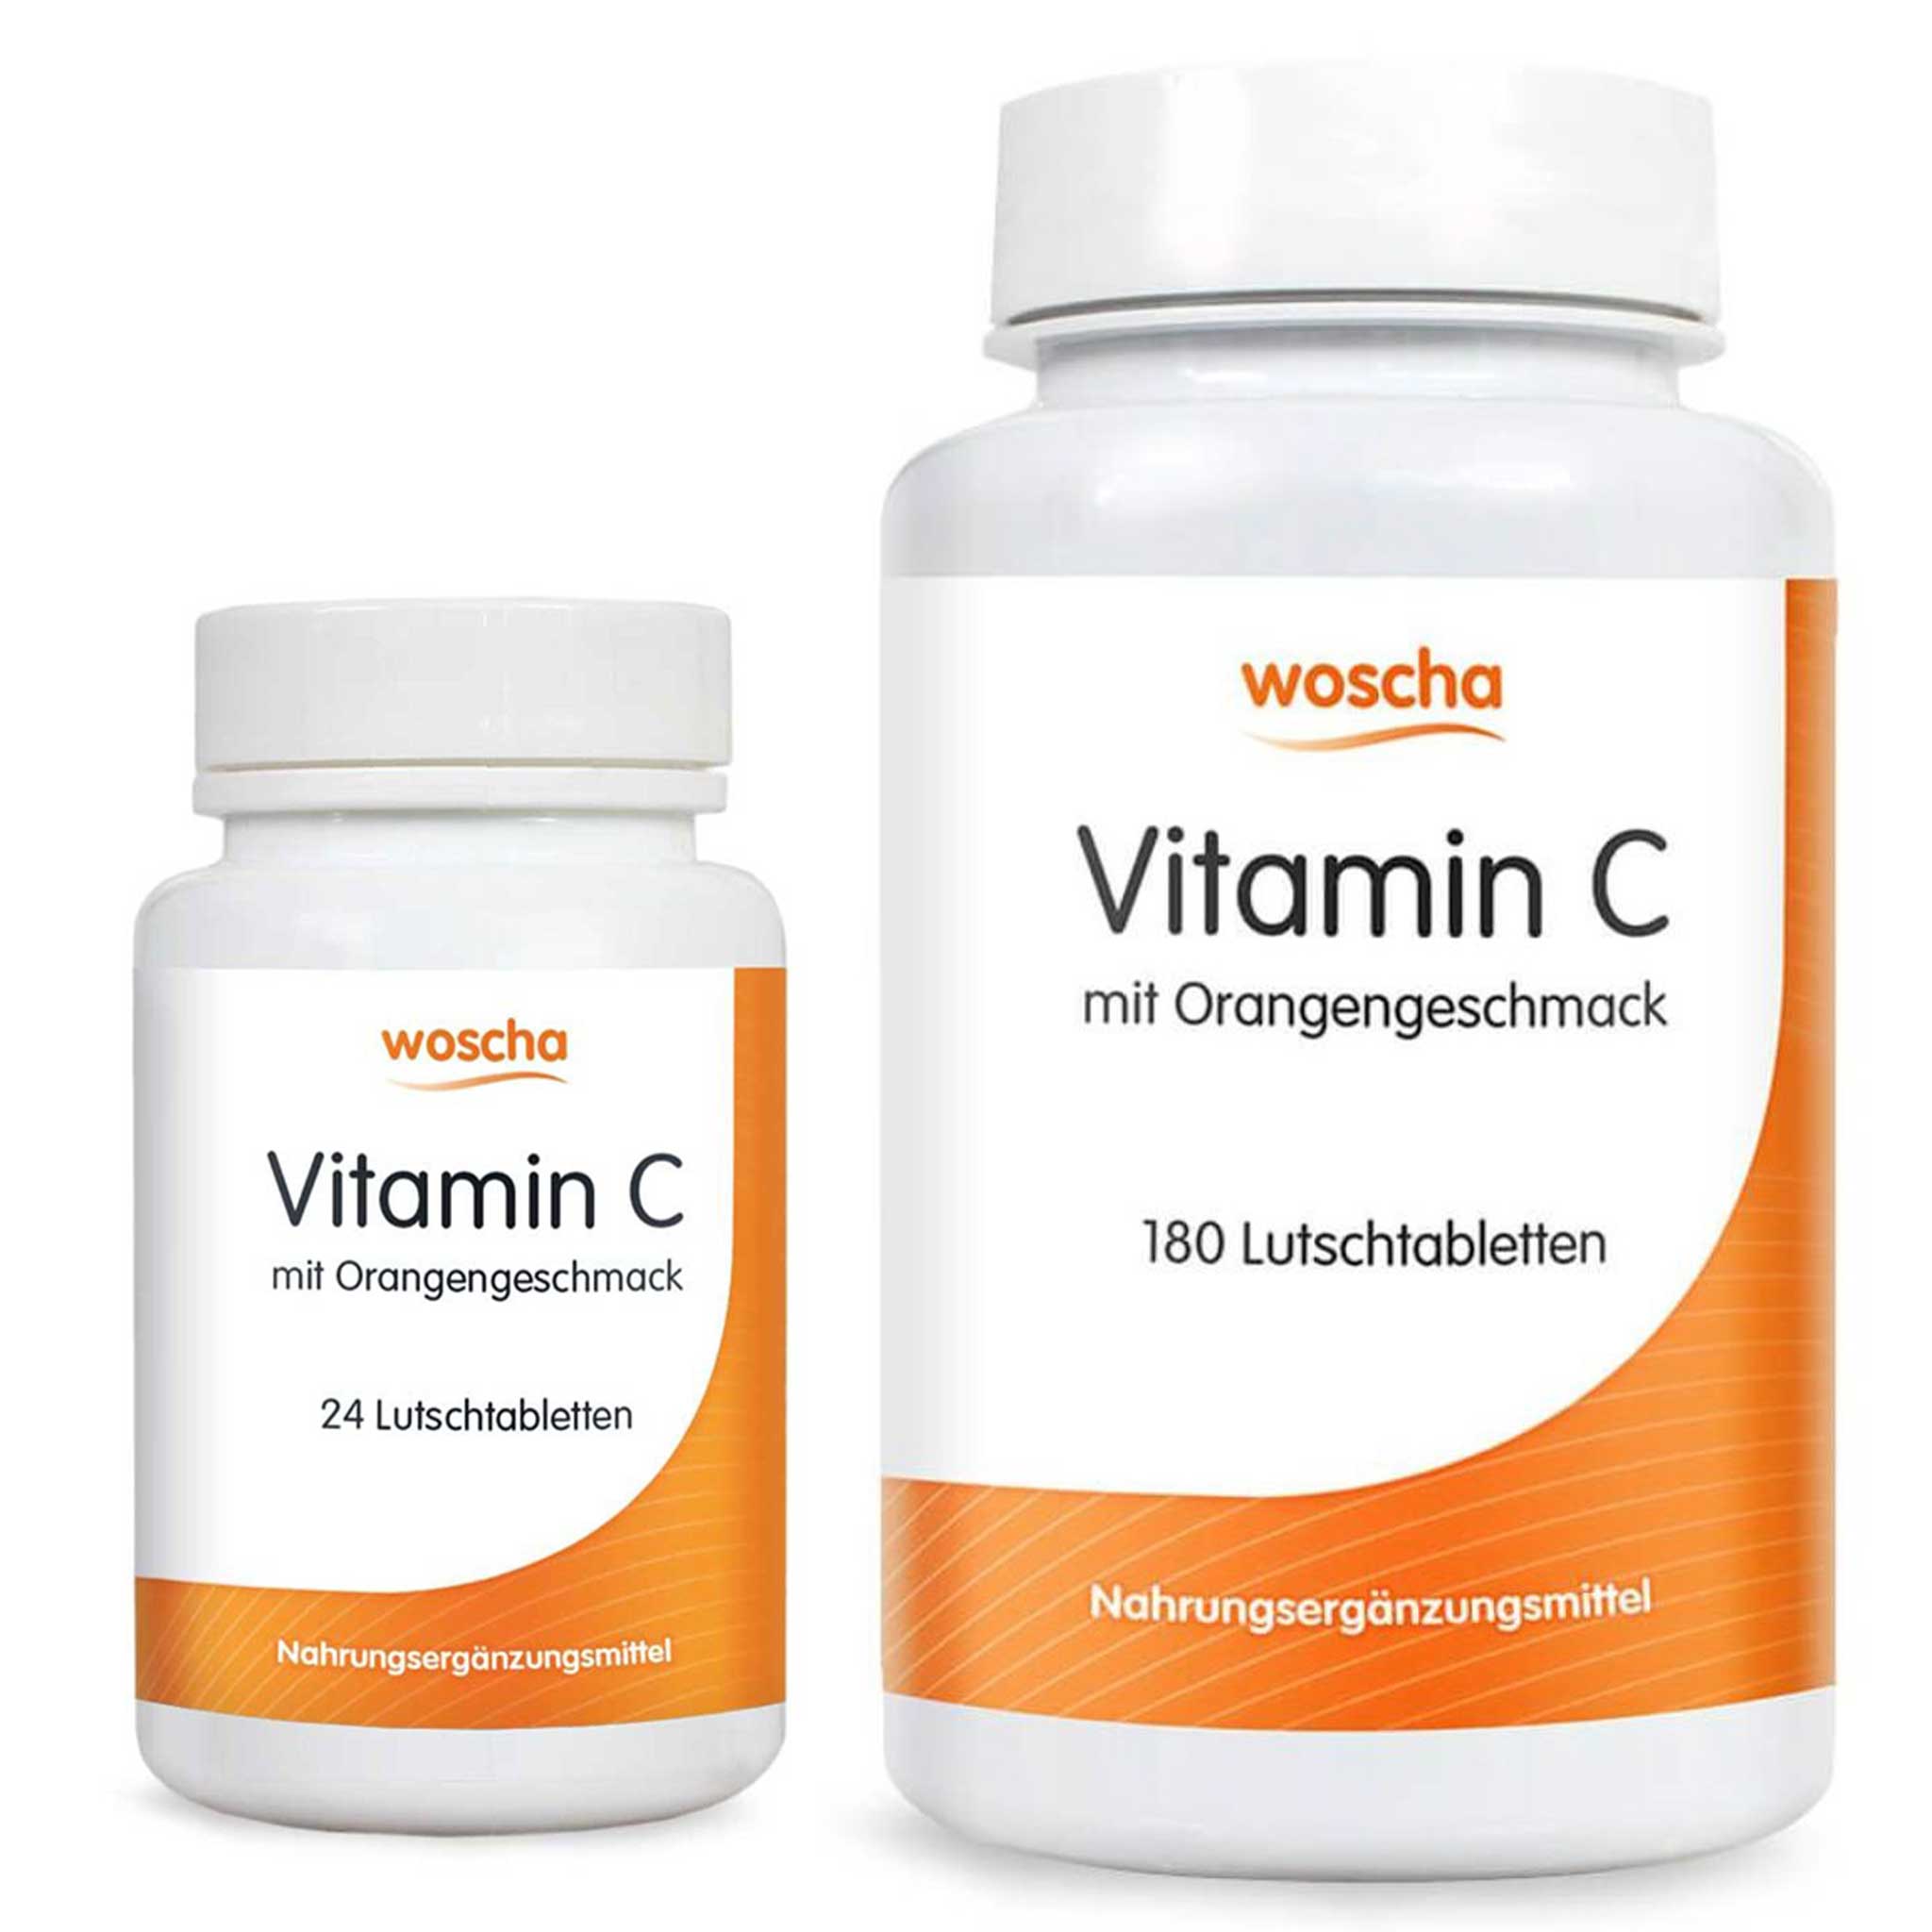 Woscha Vitamin C von podo medi in 24 und 180 Lutschtabletten Version Vorschau